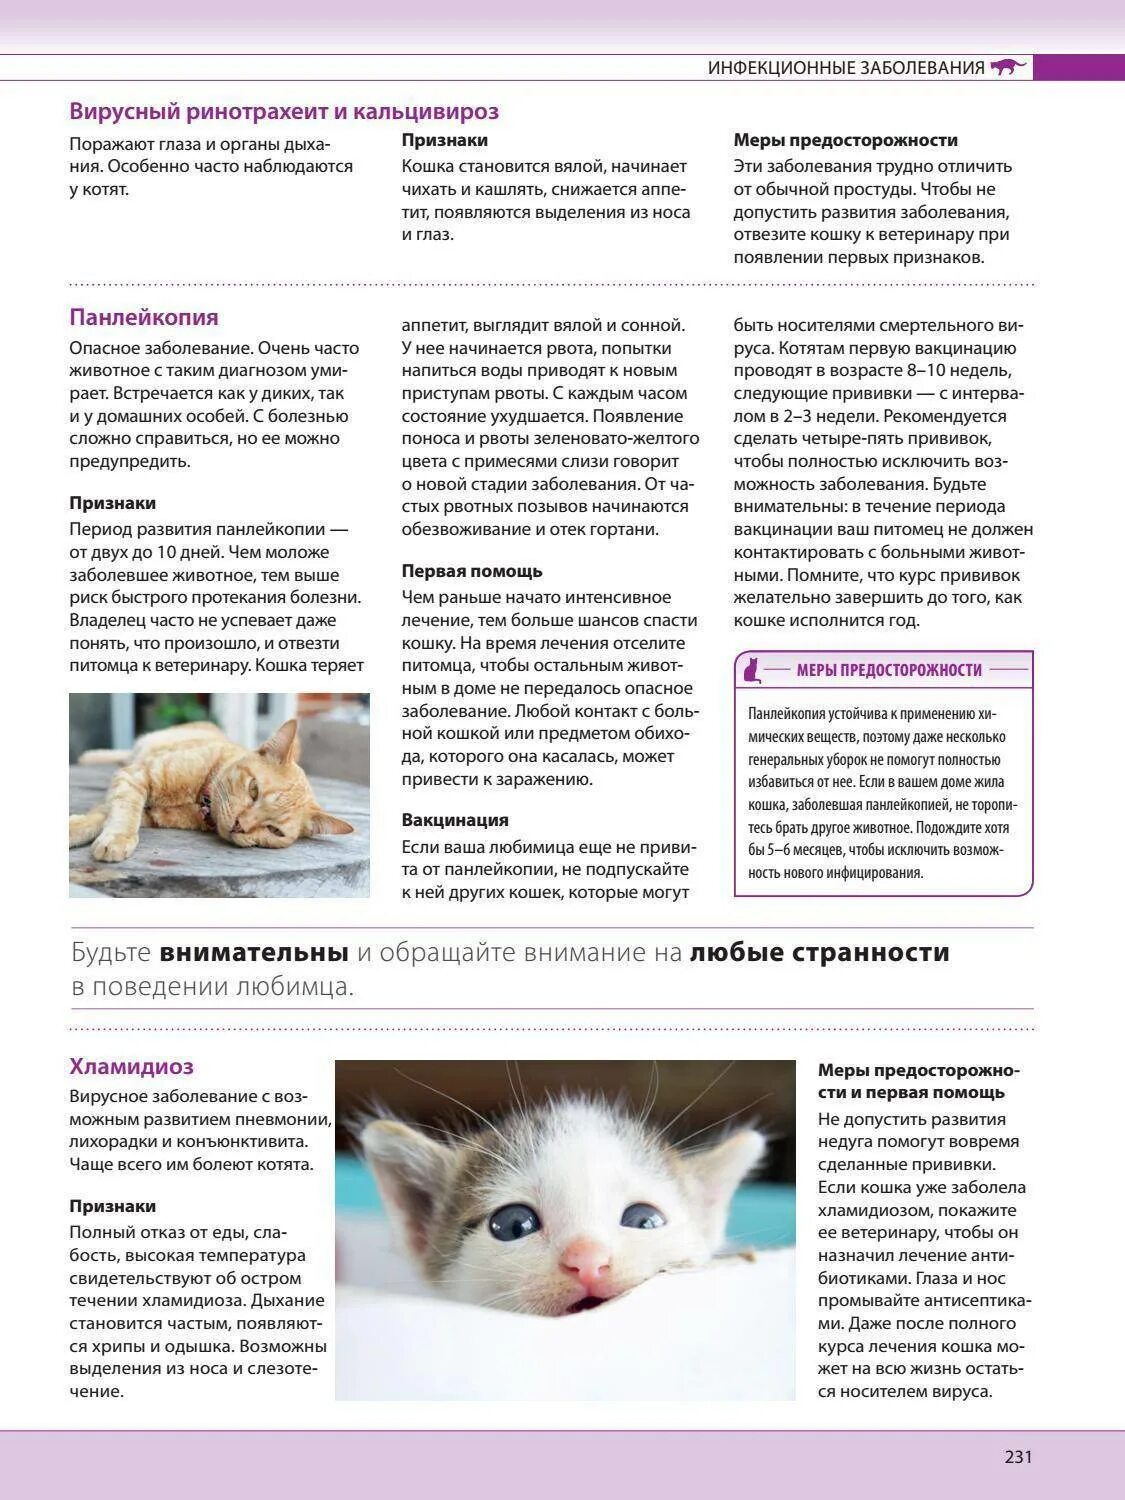 Болезни кормящей кошка. Схема лечения кальцивироза у котенка. Симптомы ринотрахеита у кошек. Болезнь ринотрахеит у котят. Ринотрахеит у кошек схема.